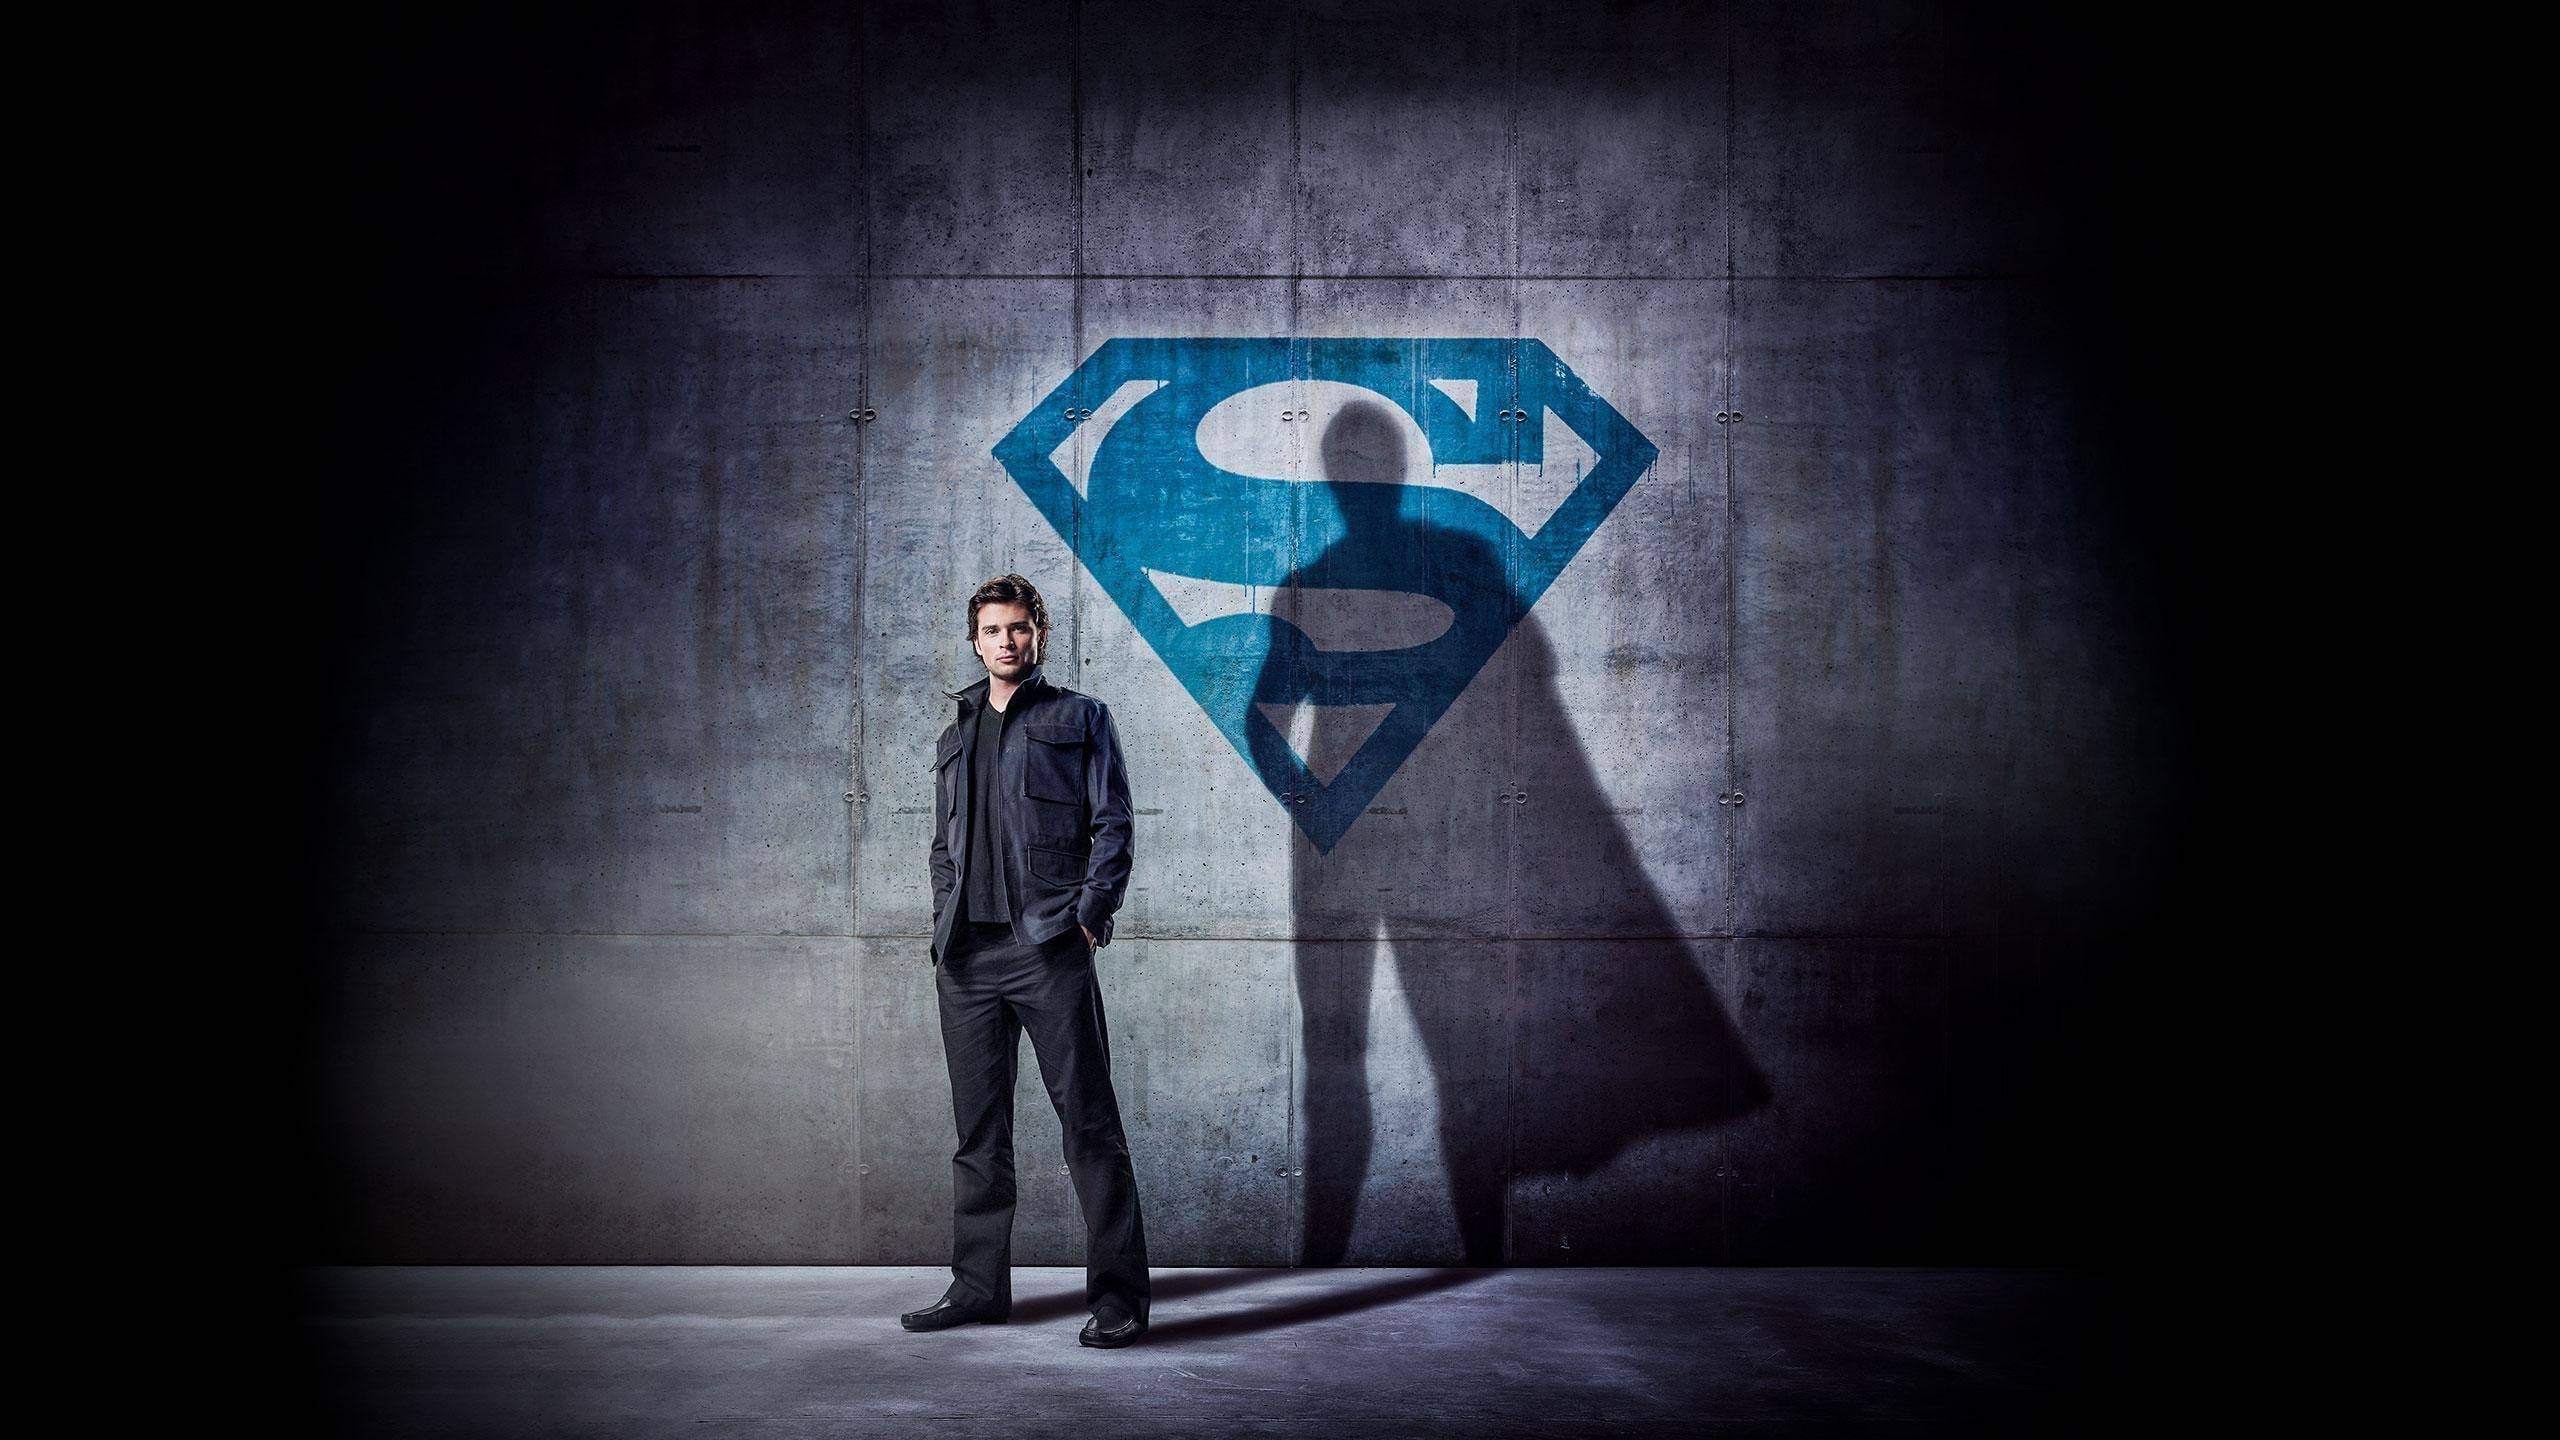 Smallville - Season 10 Episode 21